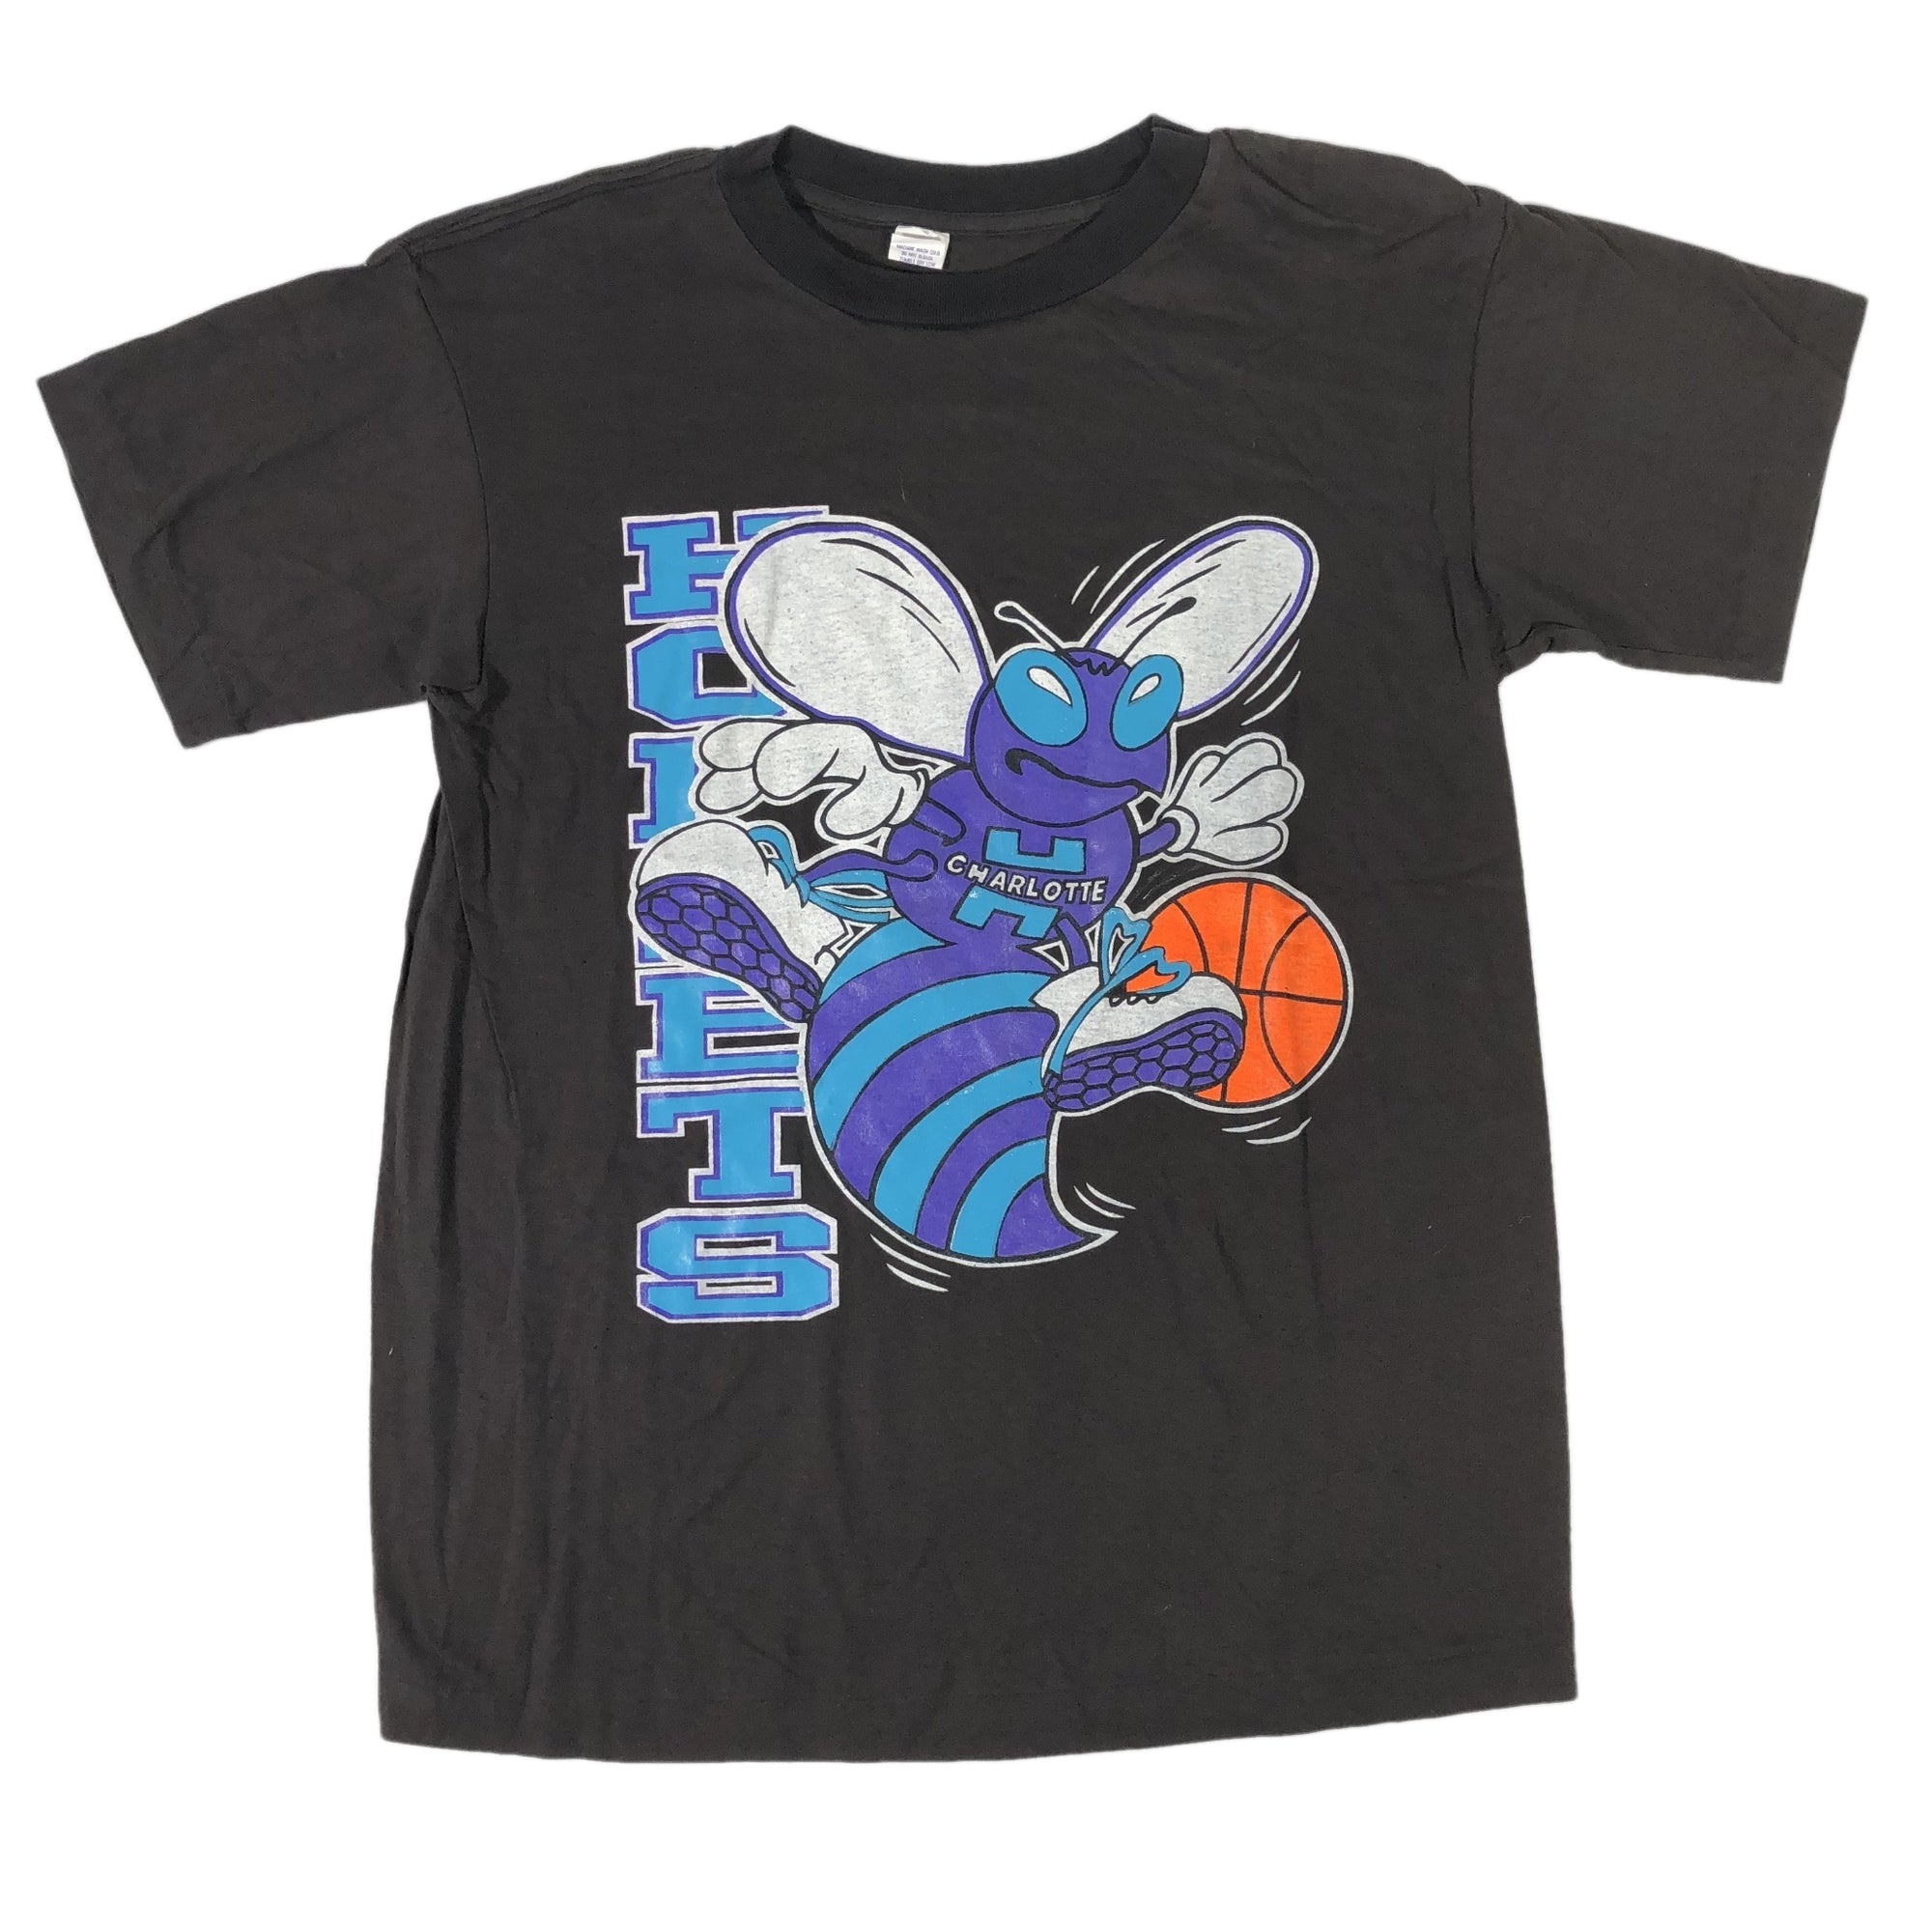 Vintage Charlotte Hornets "Logo" T-Shirt - jointcustodydc